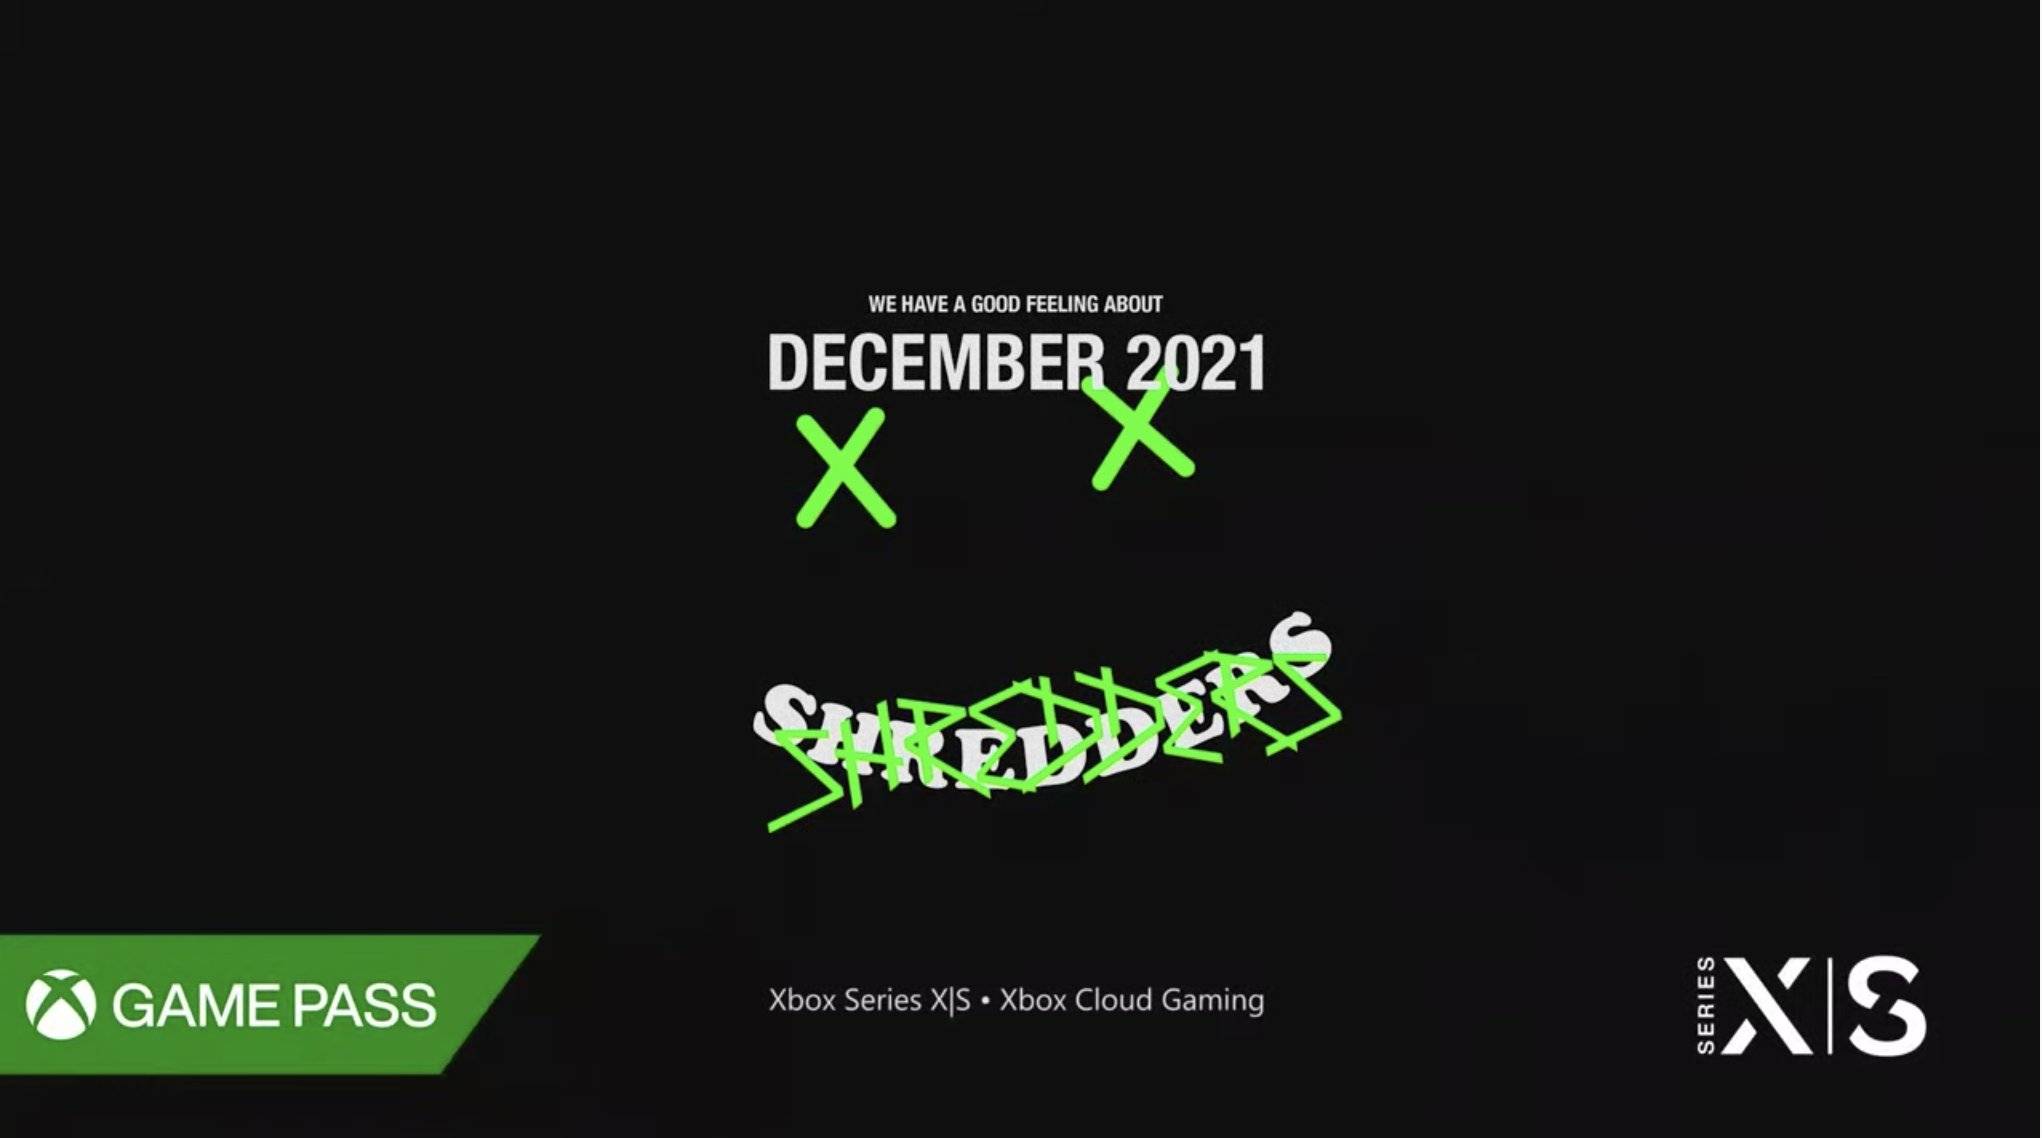 Shredders un nuevo juego de Snowboarding llegará en diciembre a Xbox game pass